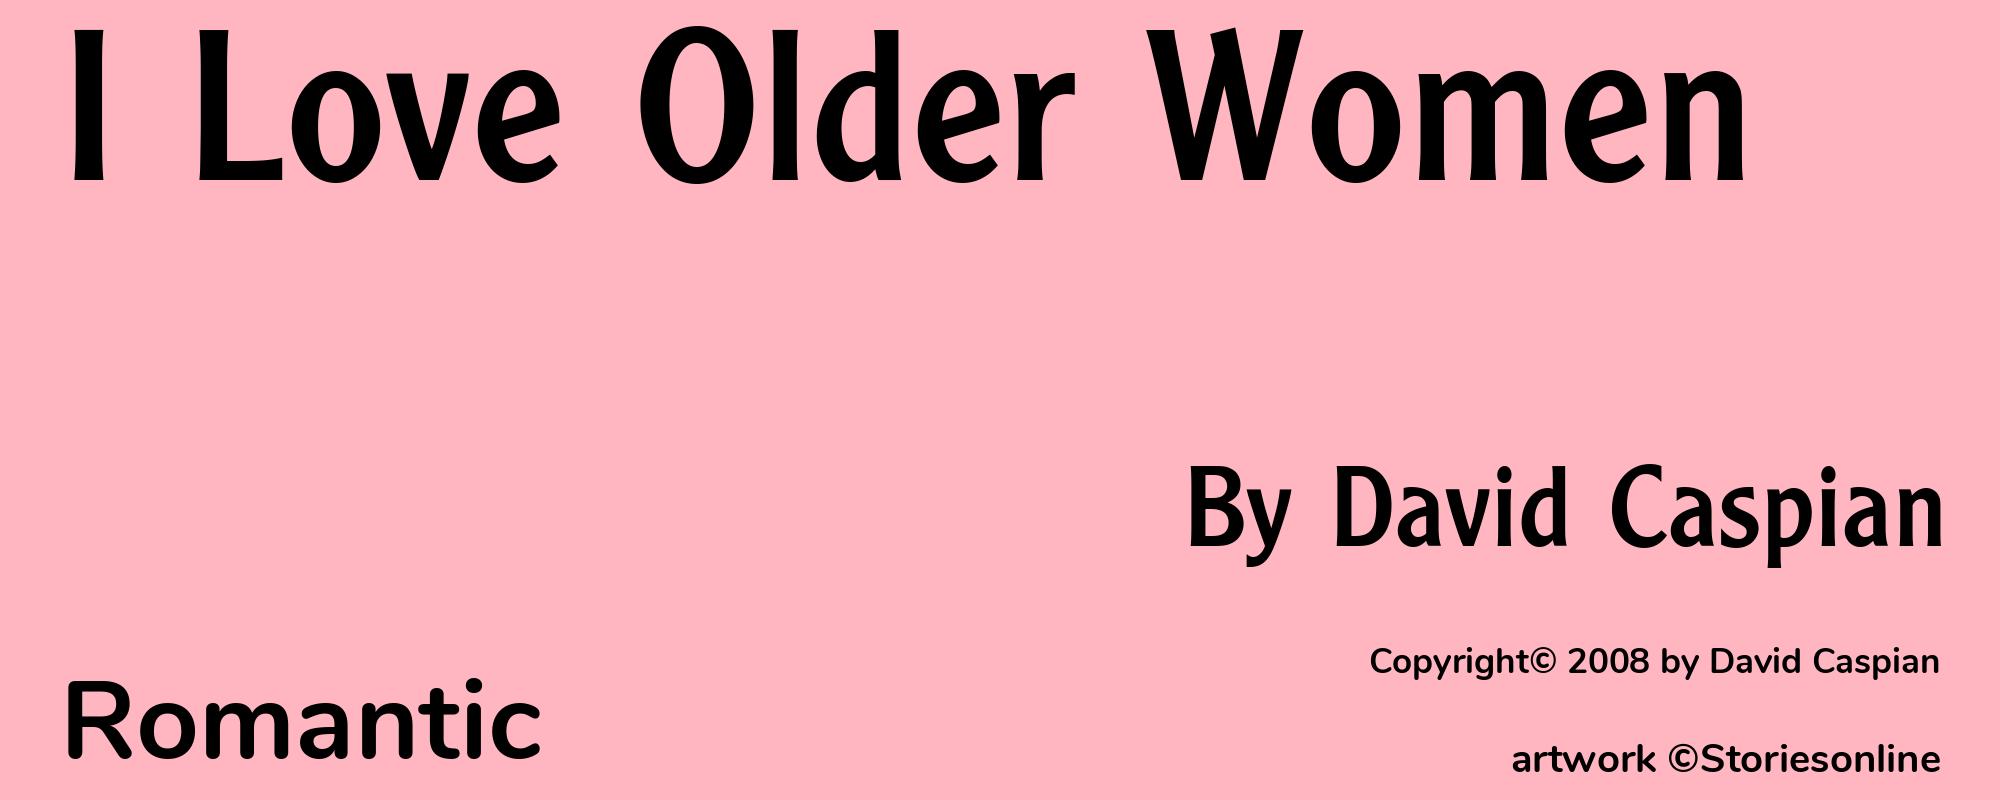 I Love Older Women - Cover